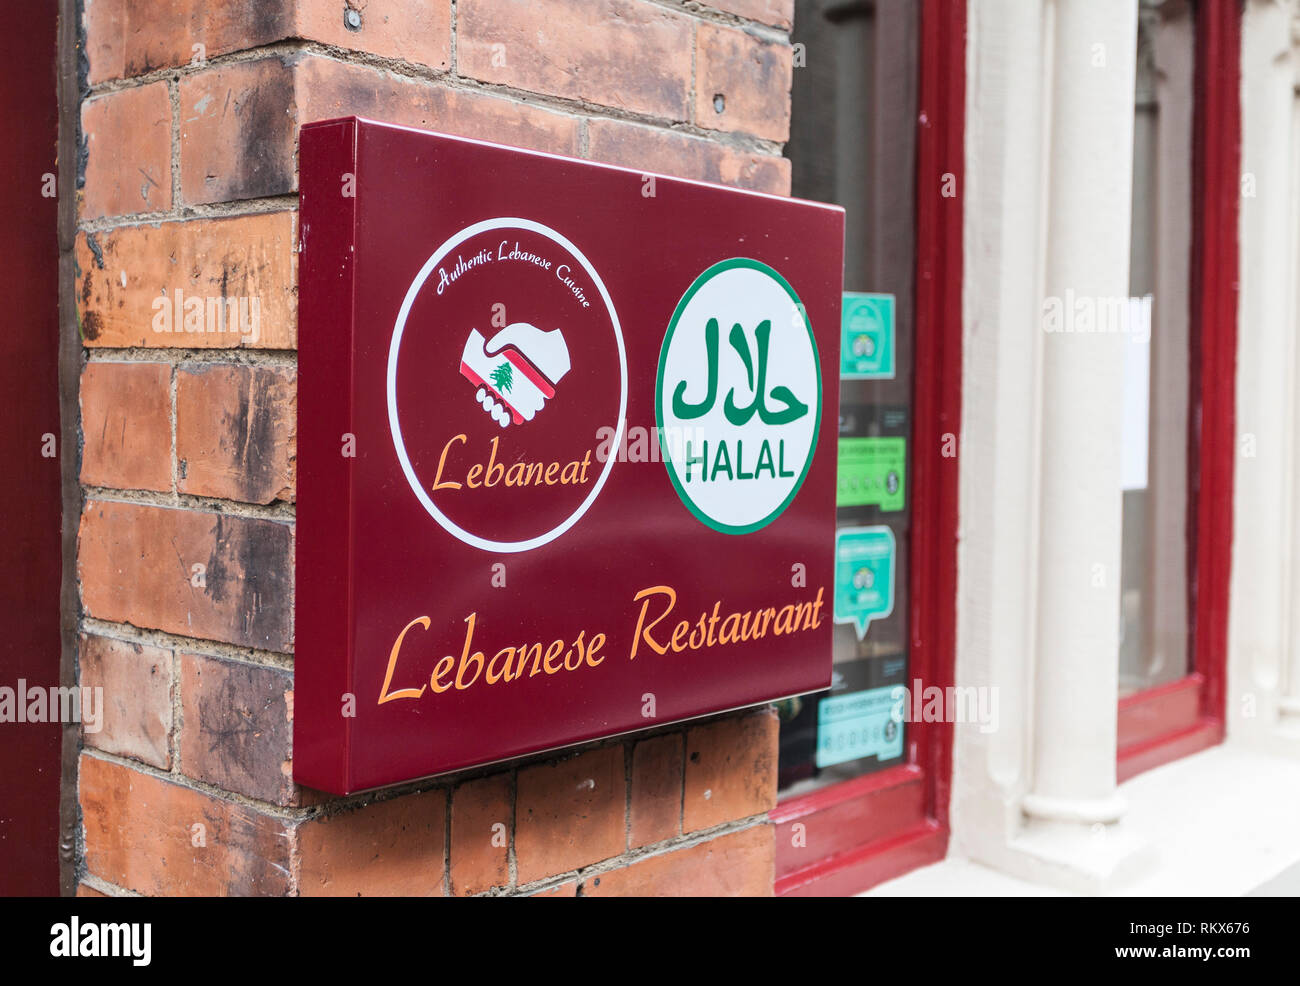 Un signe pour Lebaneat, un restaurant libanais à Durham, Angleterre, Royaume-Uni Banque D'Images